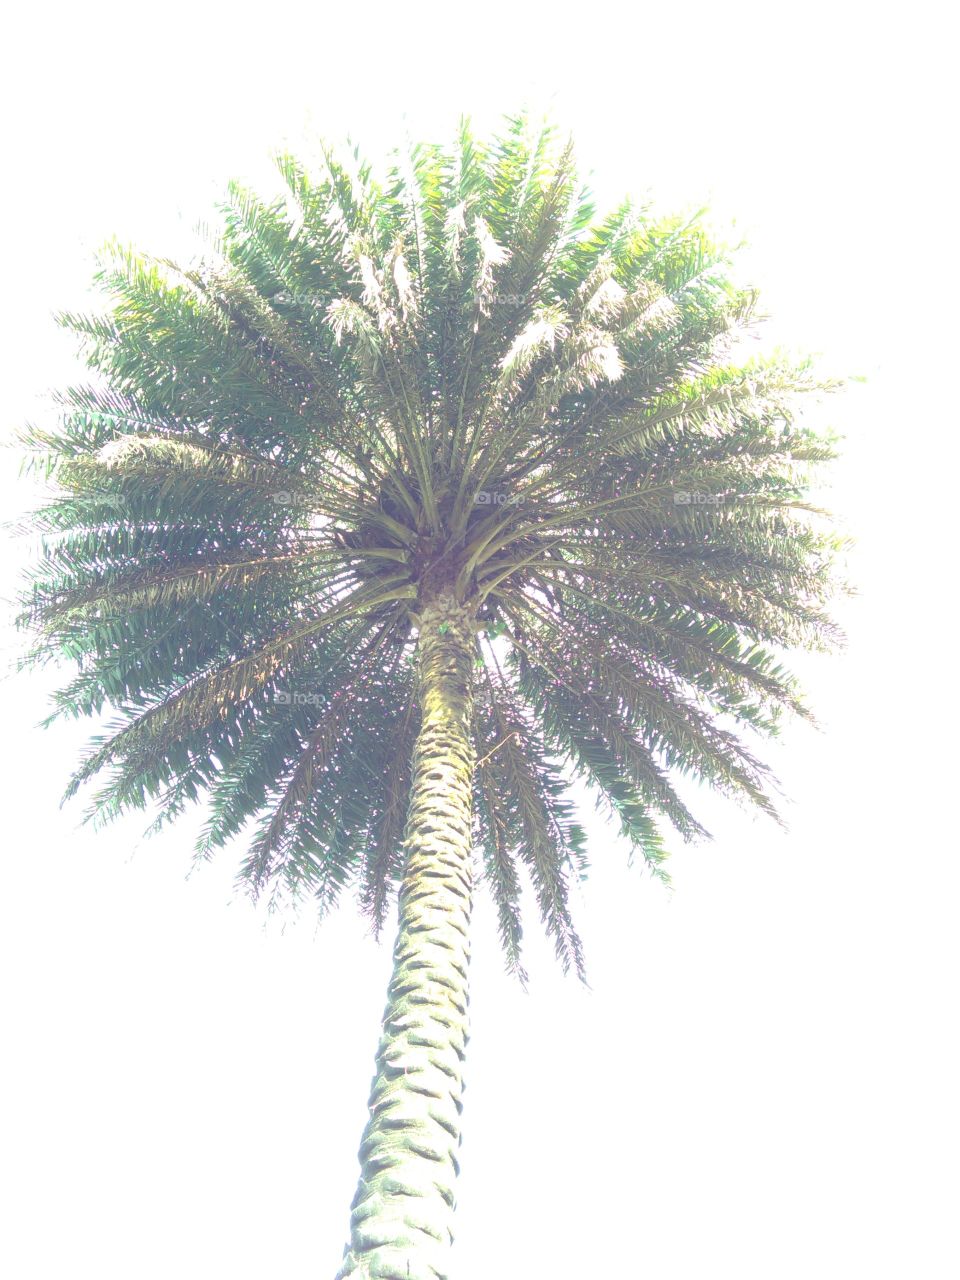 Fotografías de diferentes palmeras tardías de cámara desde abajo.